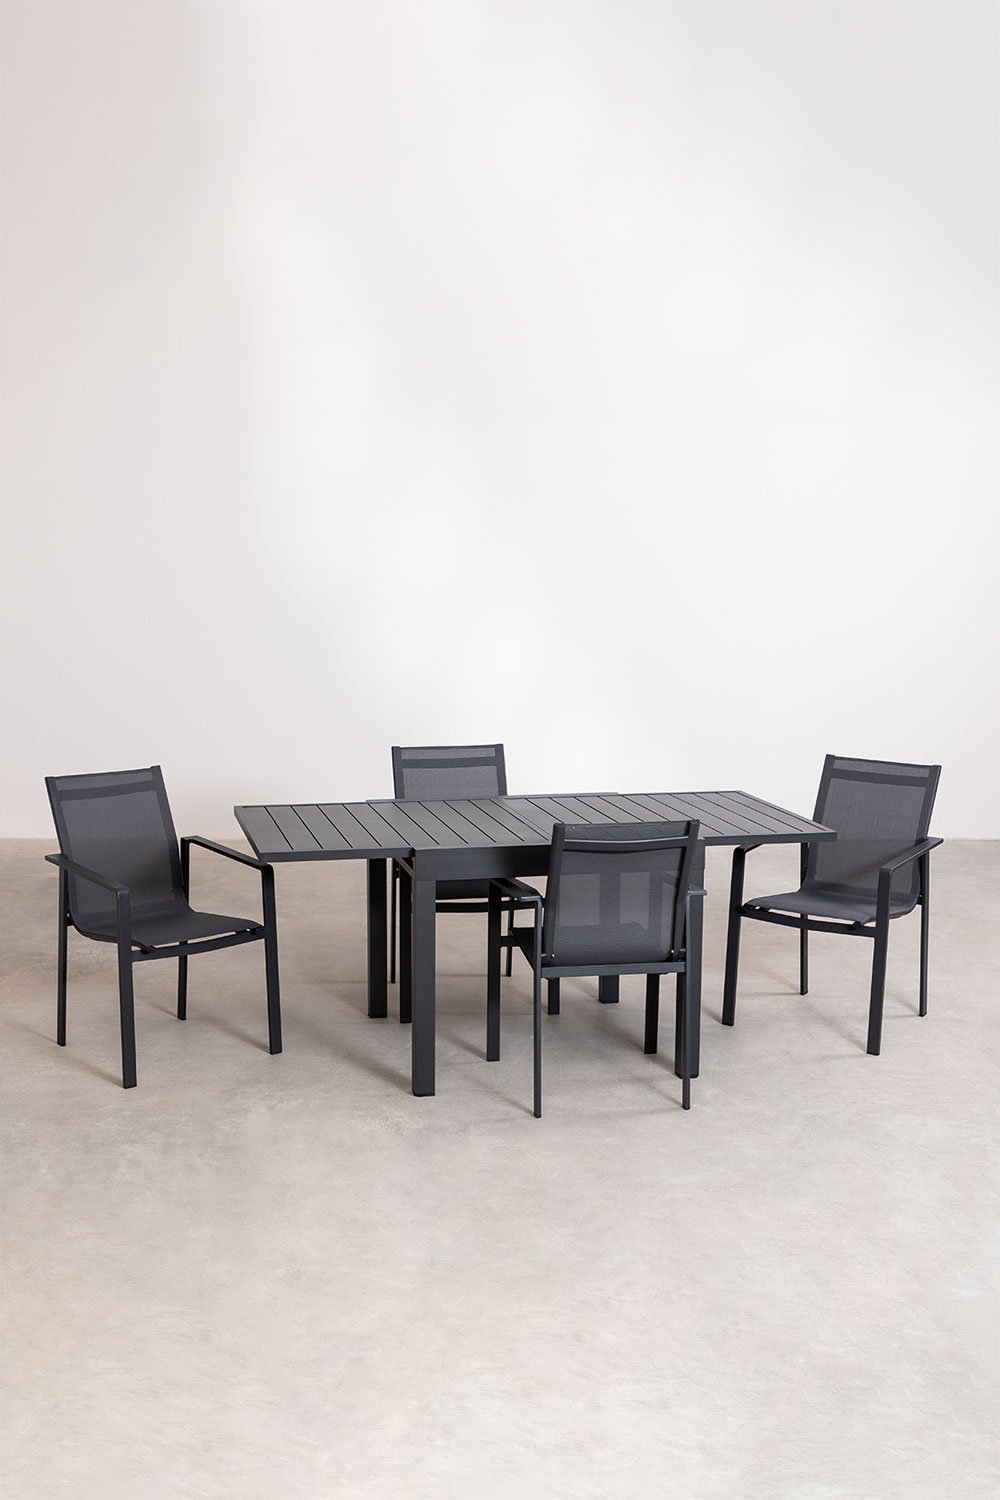 Set aus rechteckigem ausziehbarem Aluminiumtisch (90–180 x 90 cm) Starmi und 4 Eika-Außenstühlen, Galeriebild 1